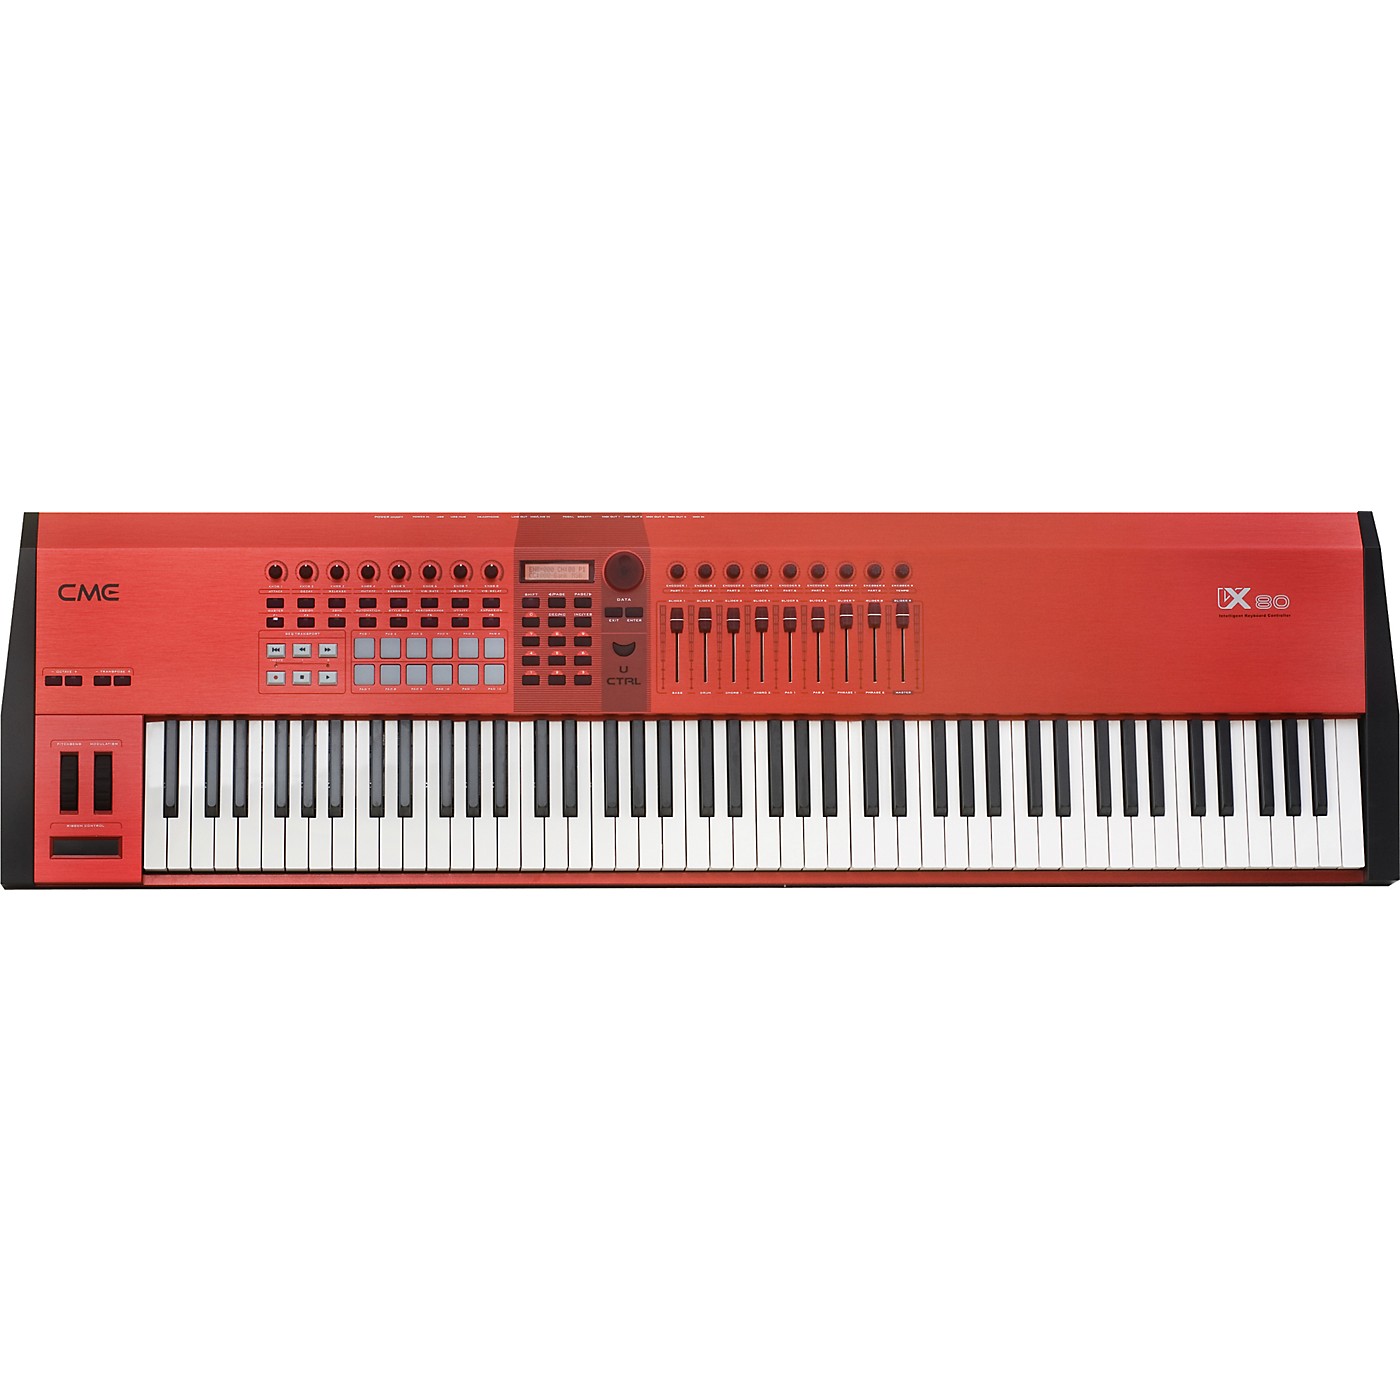 CME VX-80 Intelligent Keyboard Controller - Woodwind & Brasswind